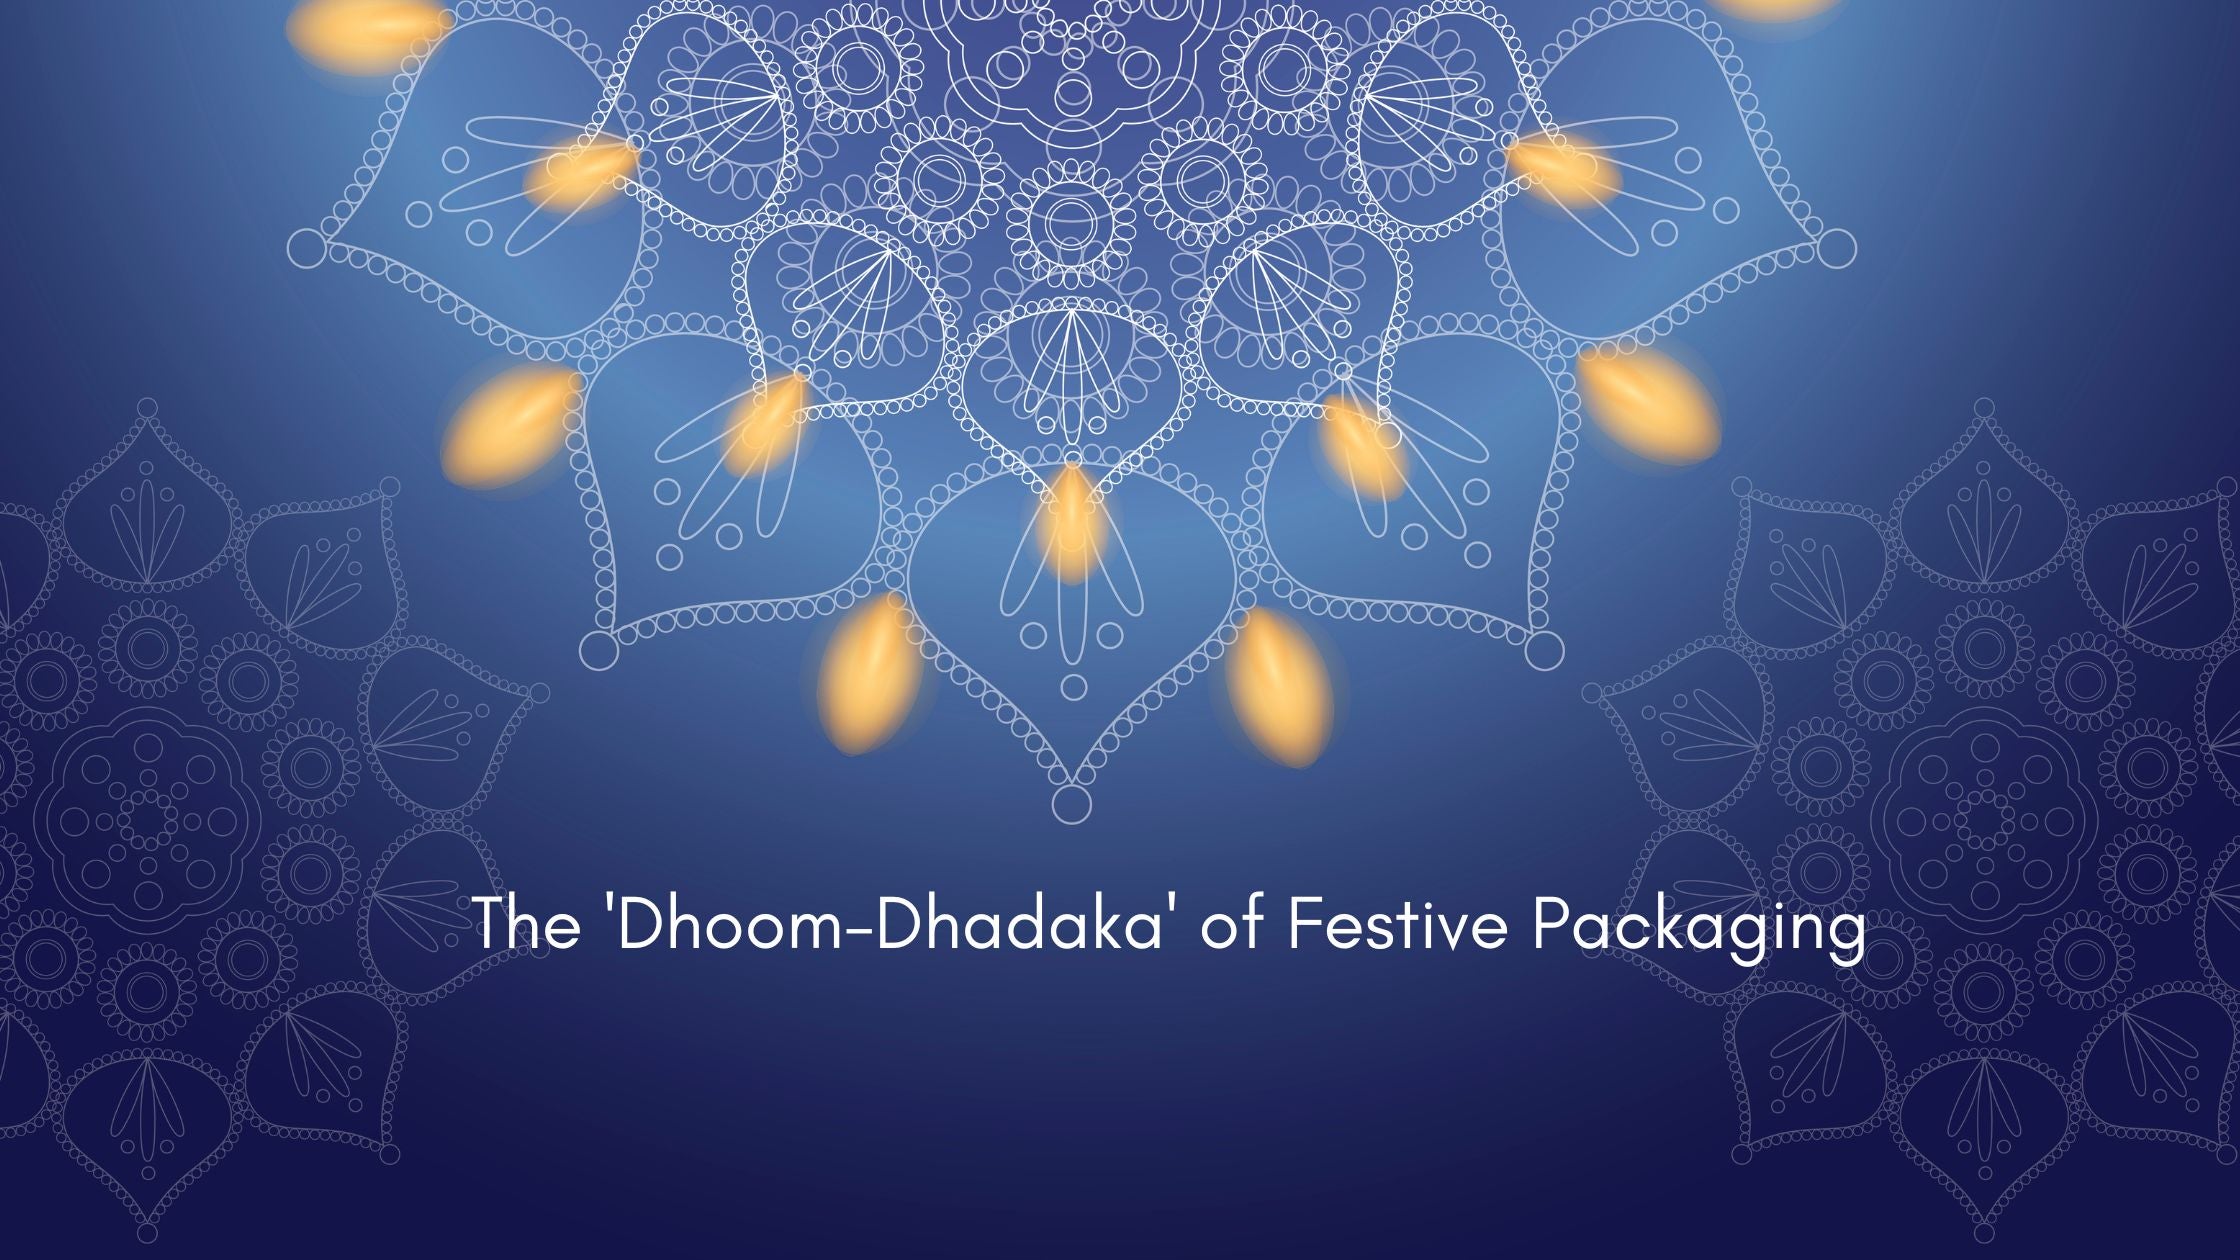 The 'Dhoom-Dhadaka' of Festive Packaging